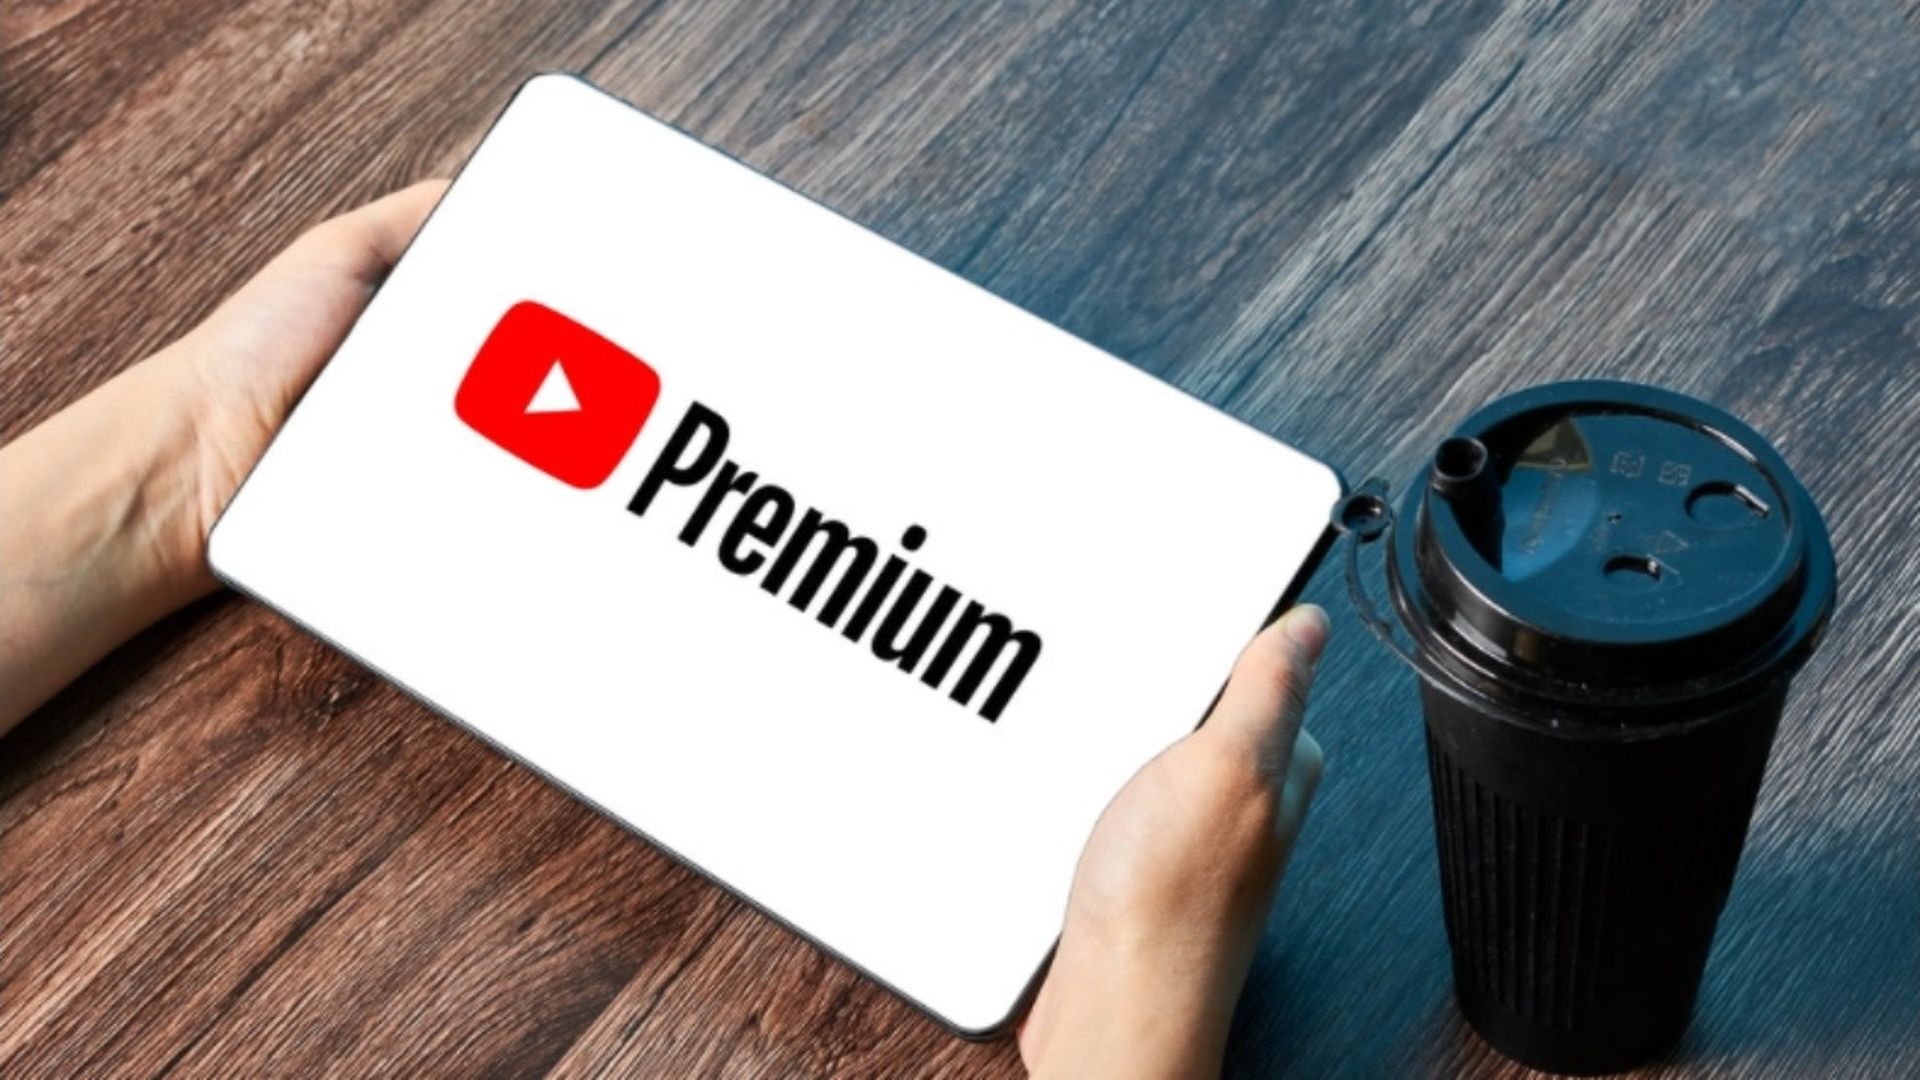 YouTube Premium fiyatı hakkını veriyor mu?